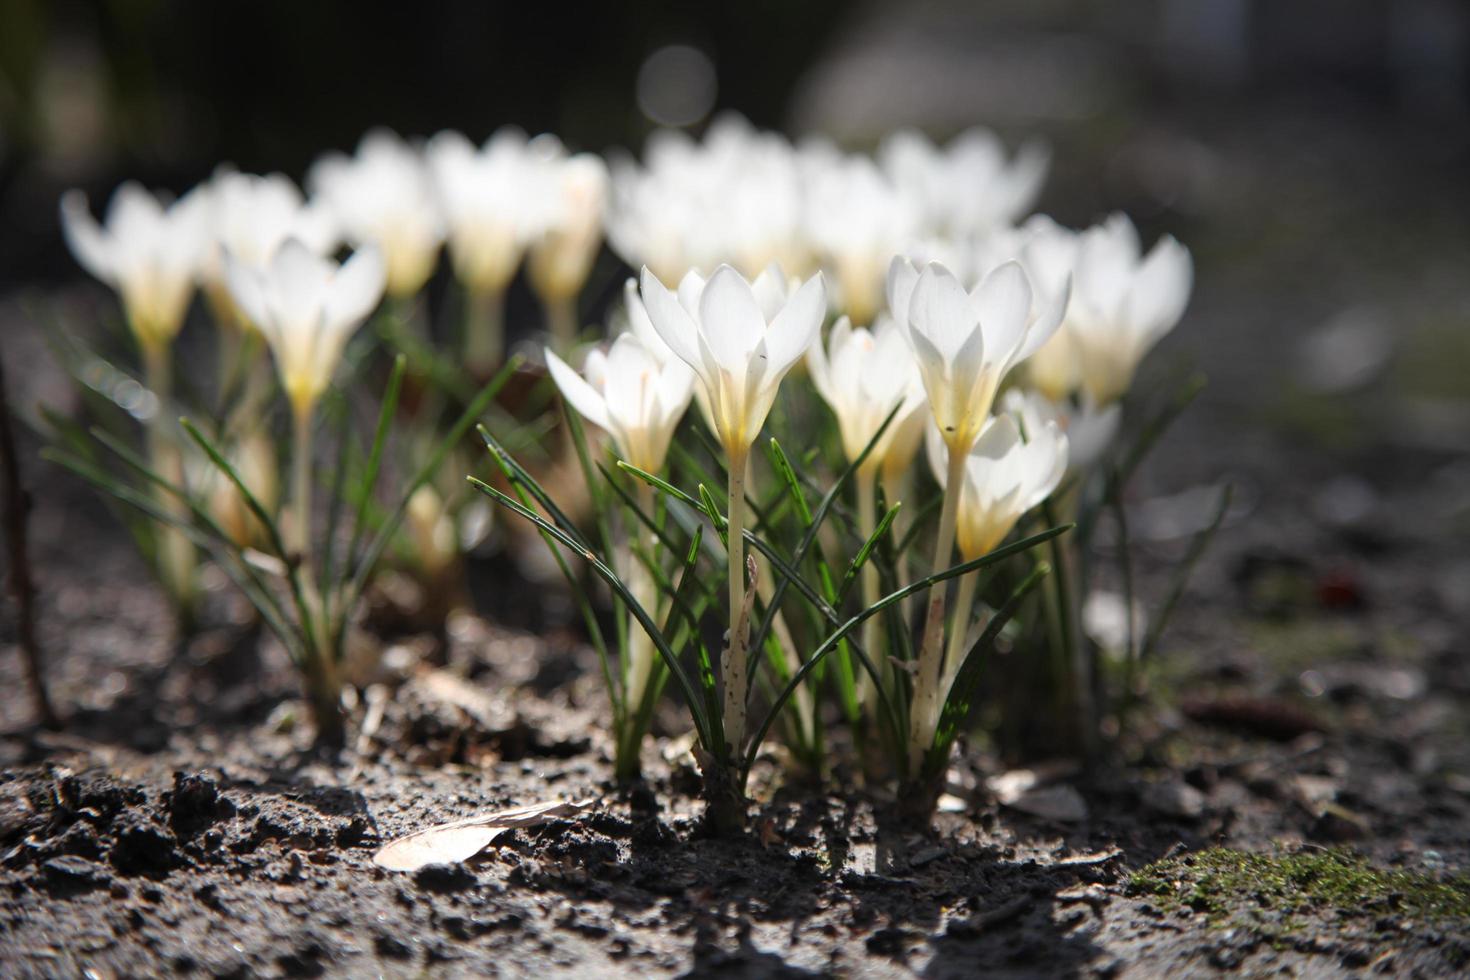 de eerste lentebloemen bloeien in de tuin. witte krokusbloemen die in het vroege voorjaar op de grond groeien foto